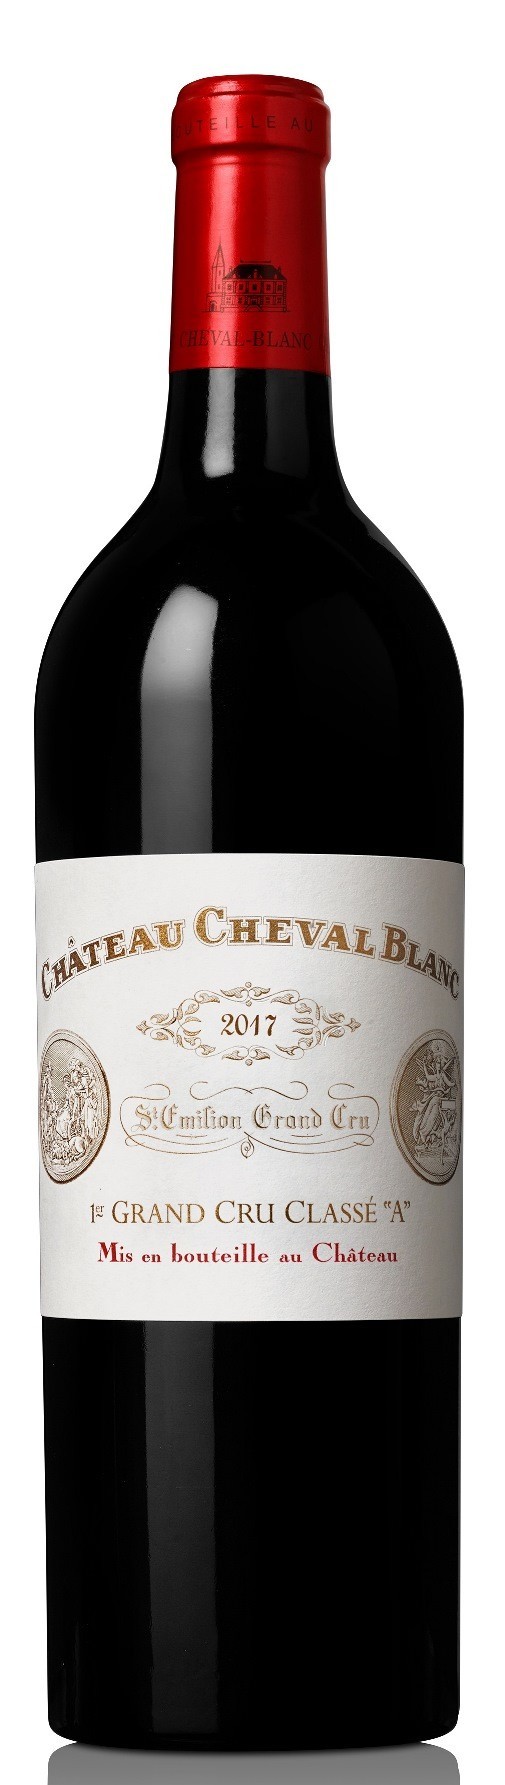 Chateau Cheval Blanc 2020, Saint Emilion 